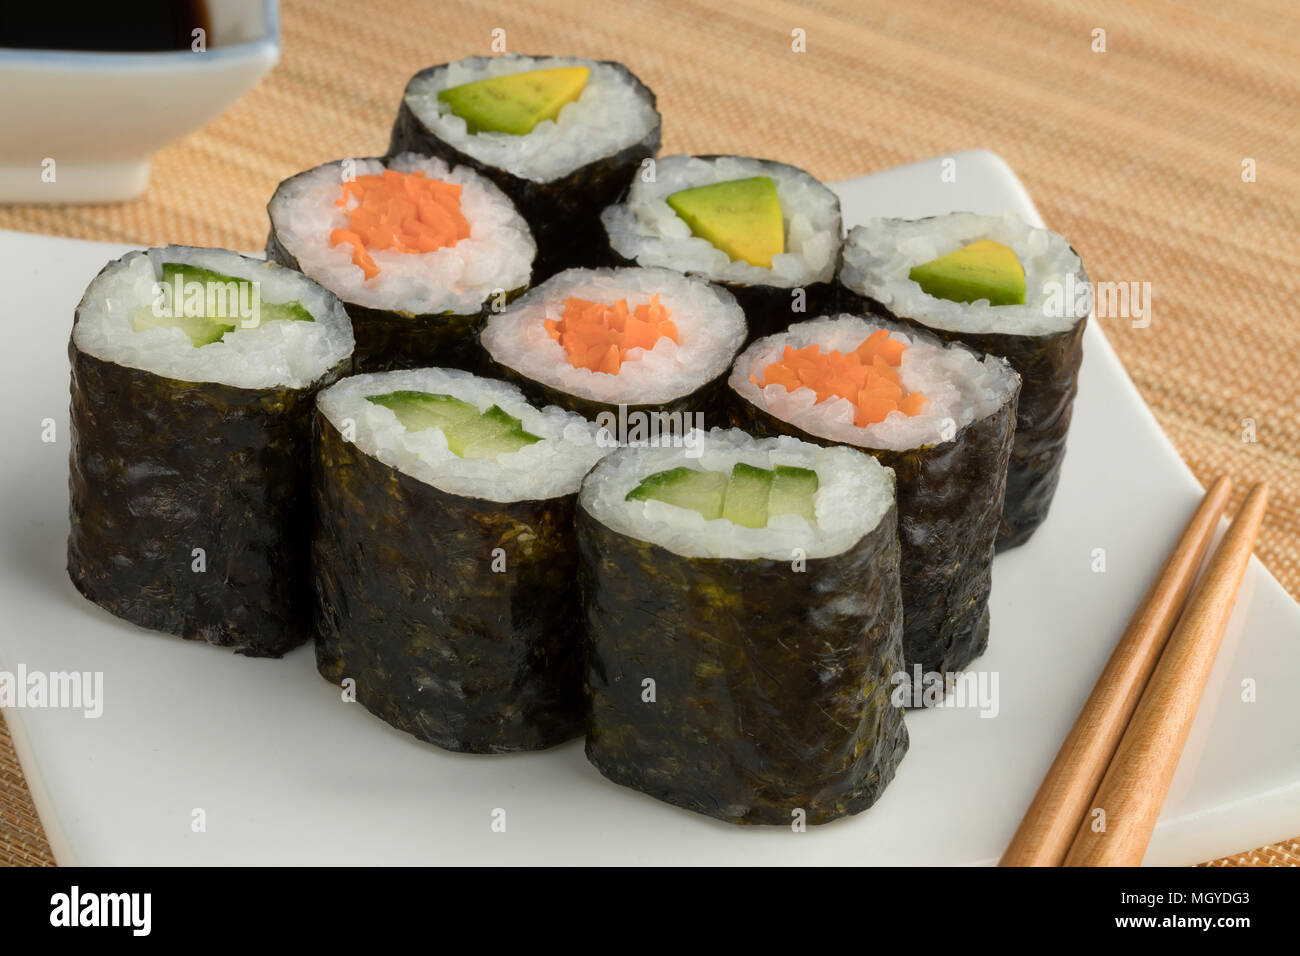 Traditionelle Vielzahl der japanischen Sushi maki Gemüse auf einem Teller Stockfoto